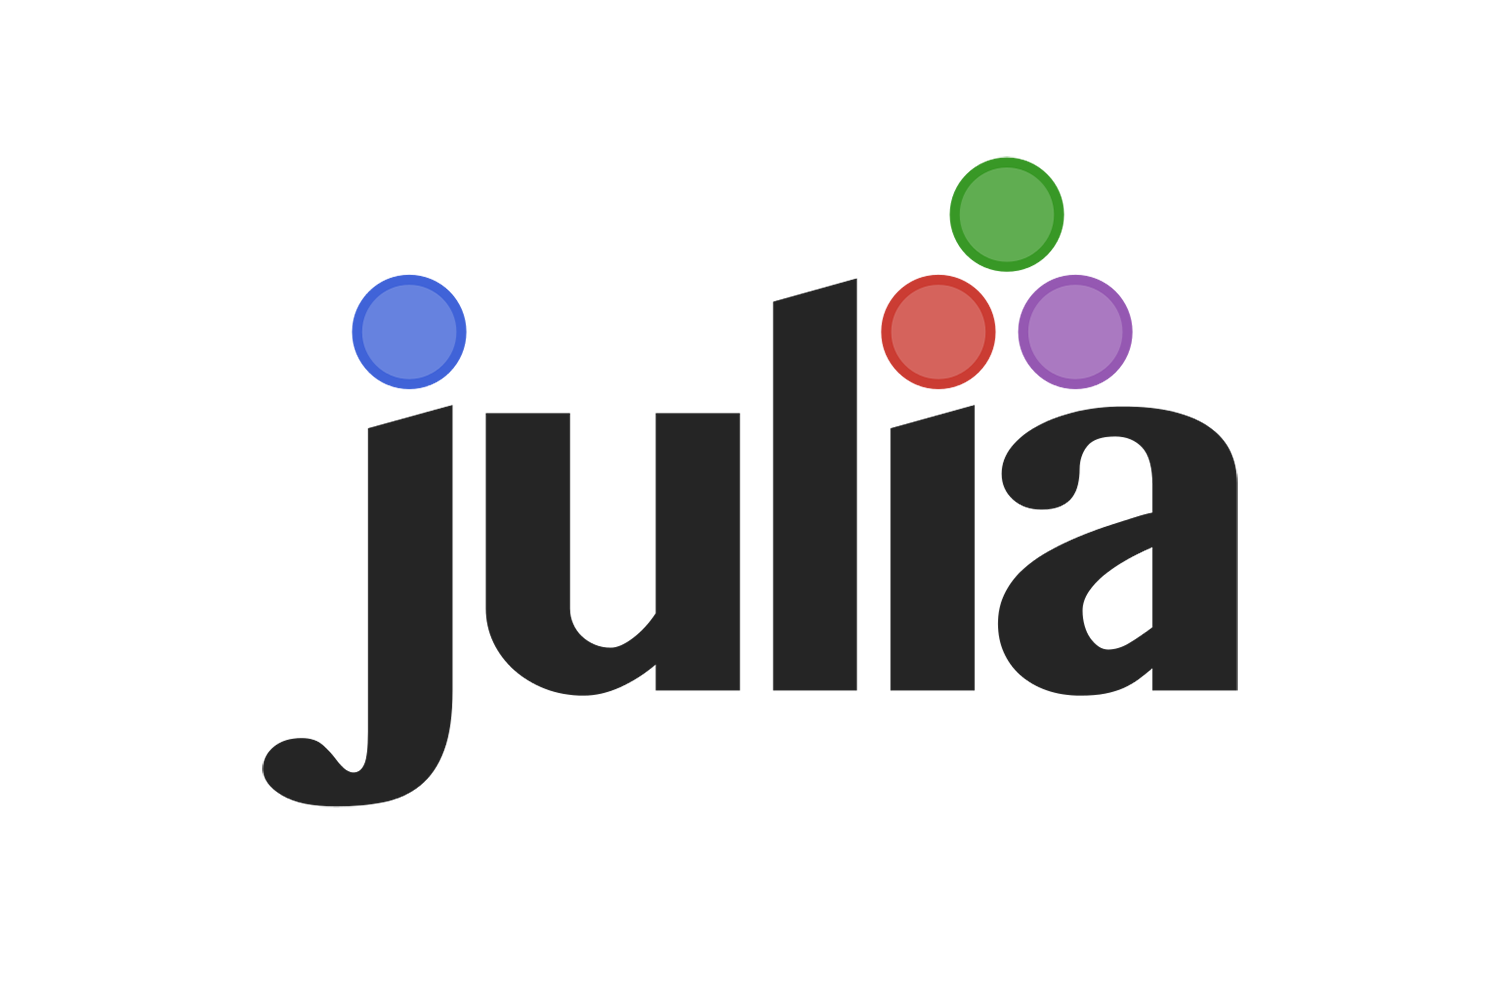 MIT-created programming language Julia 1.0 debuts